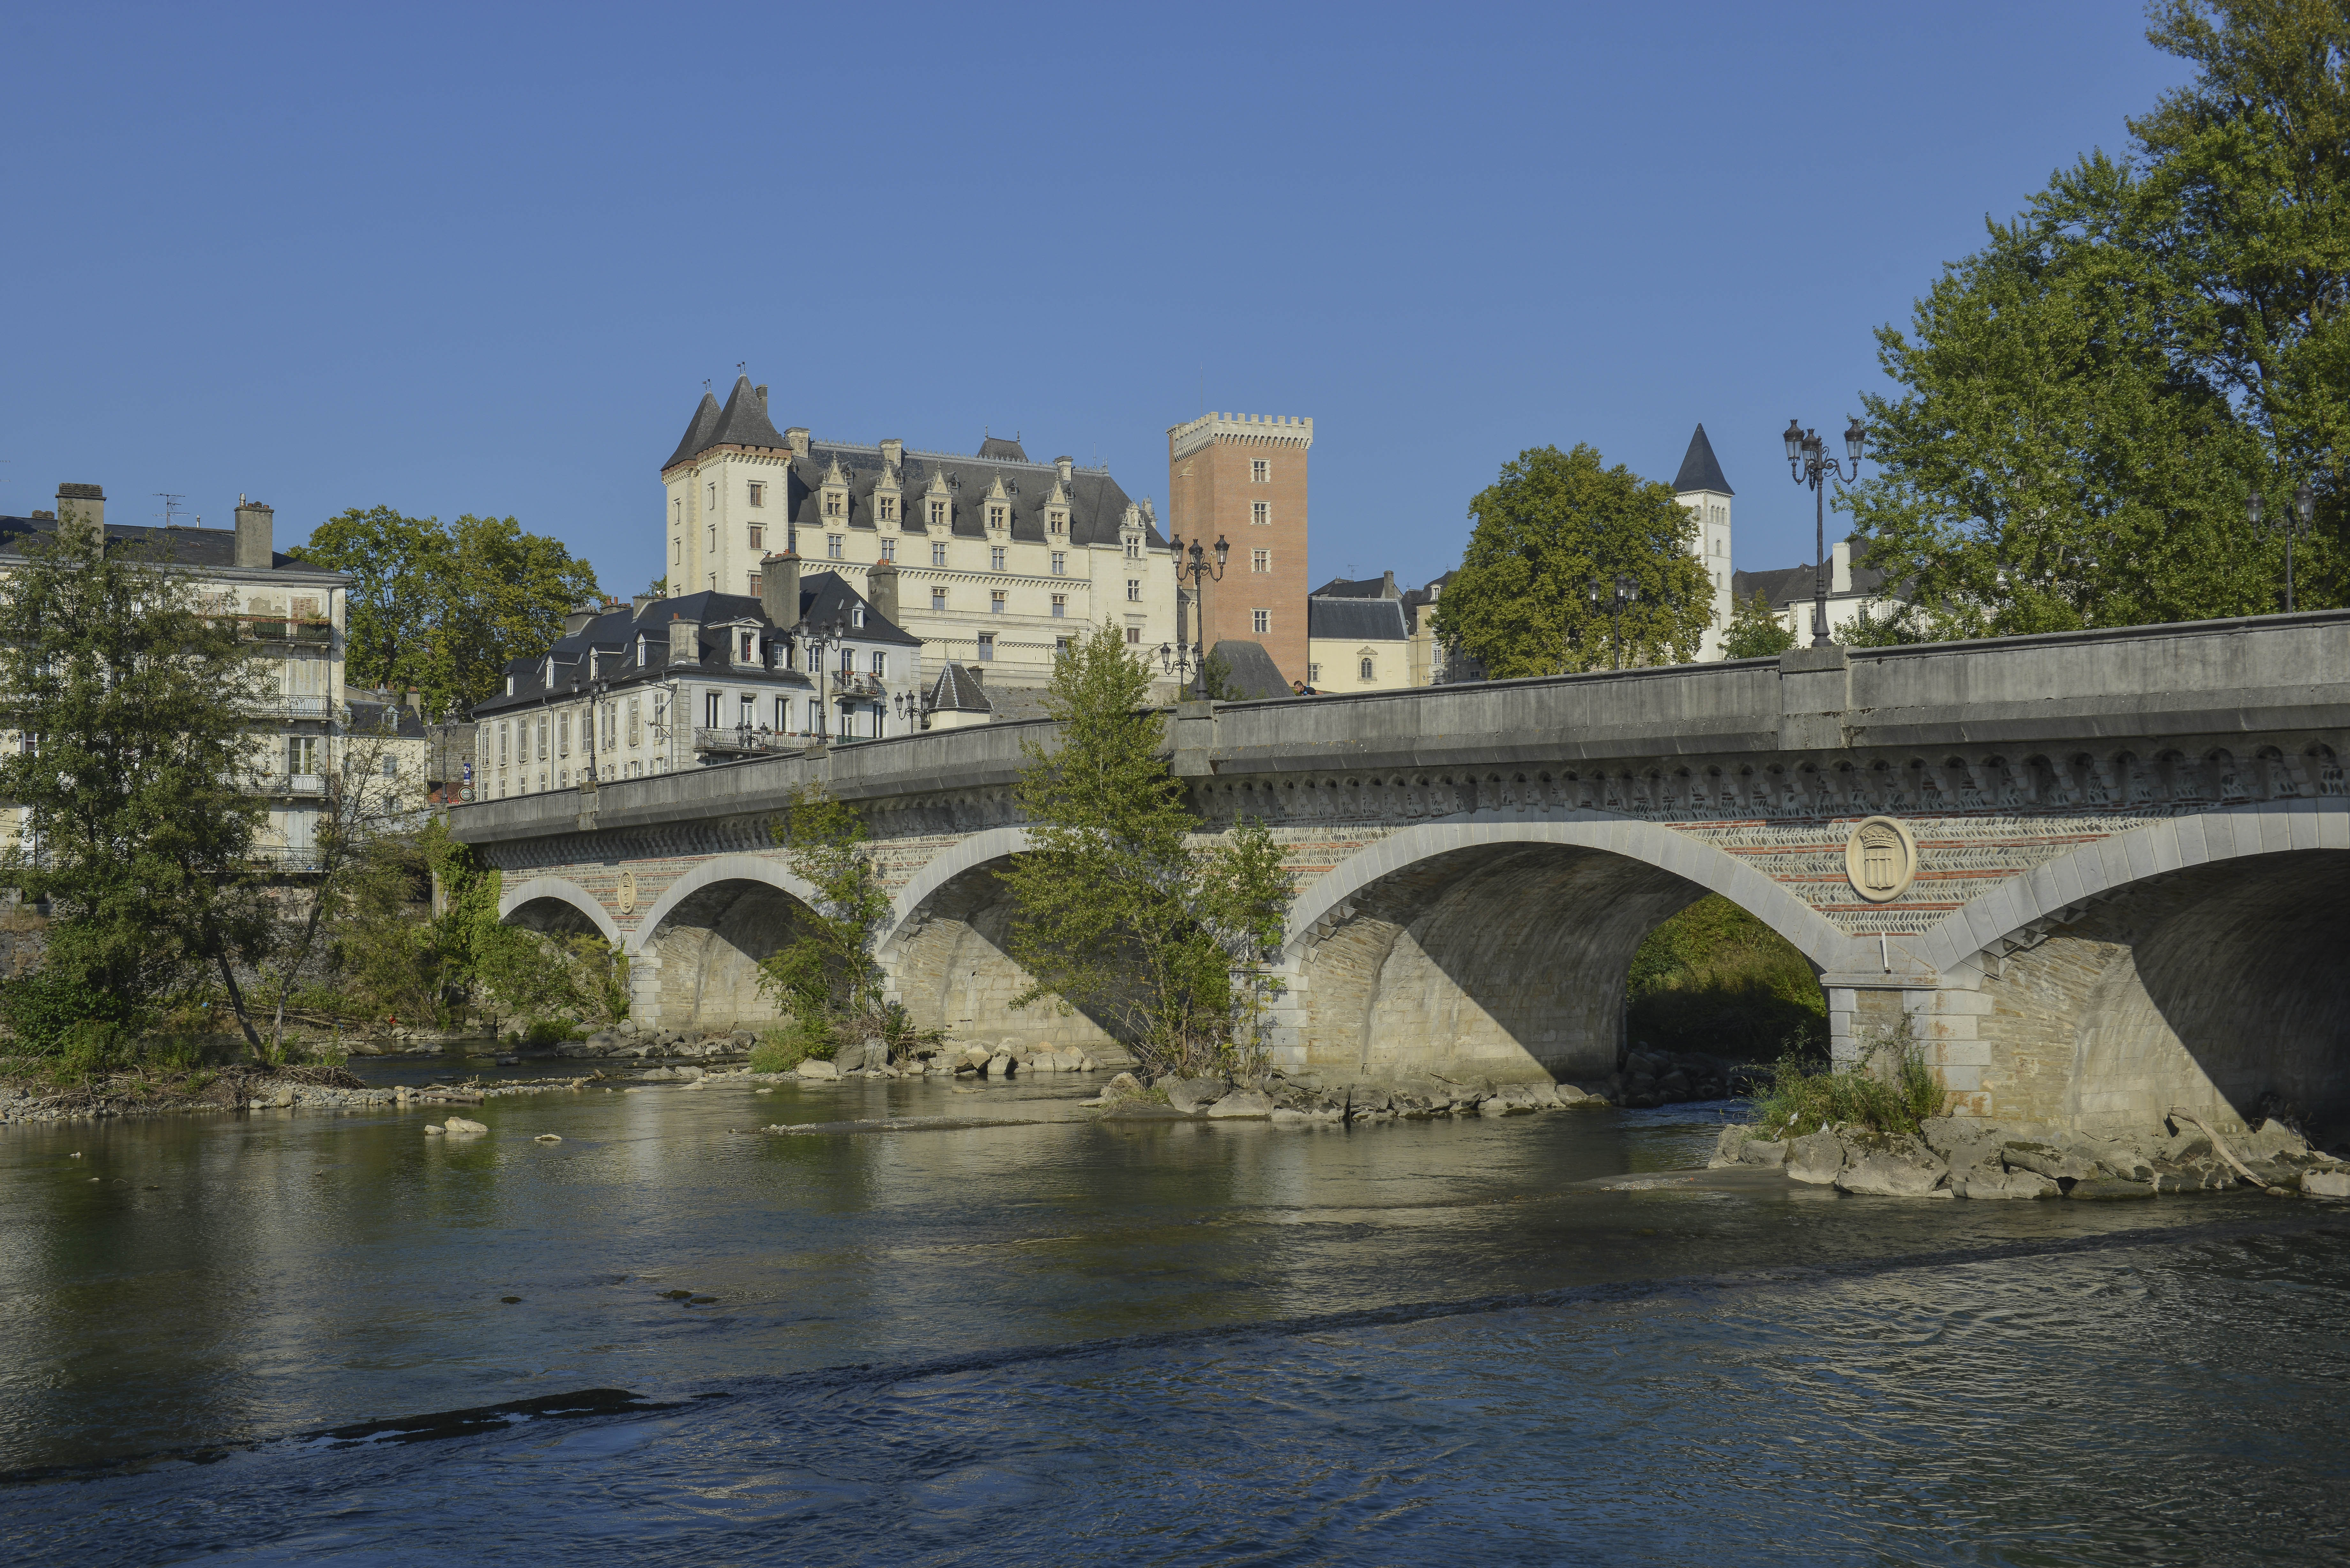 Copyright-Alban Gilbert-CRTNA-Le pont du XIV juillet franchissant le gave de Pau et le chateau en arriere-plan-10080